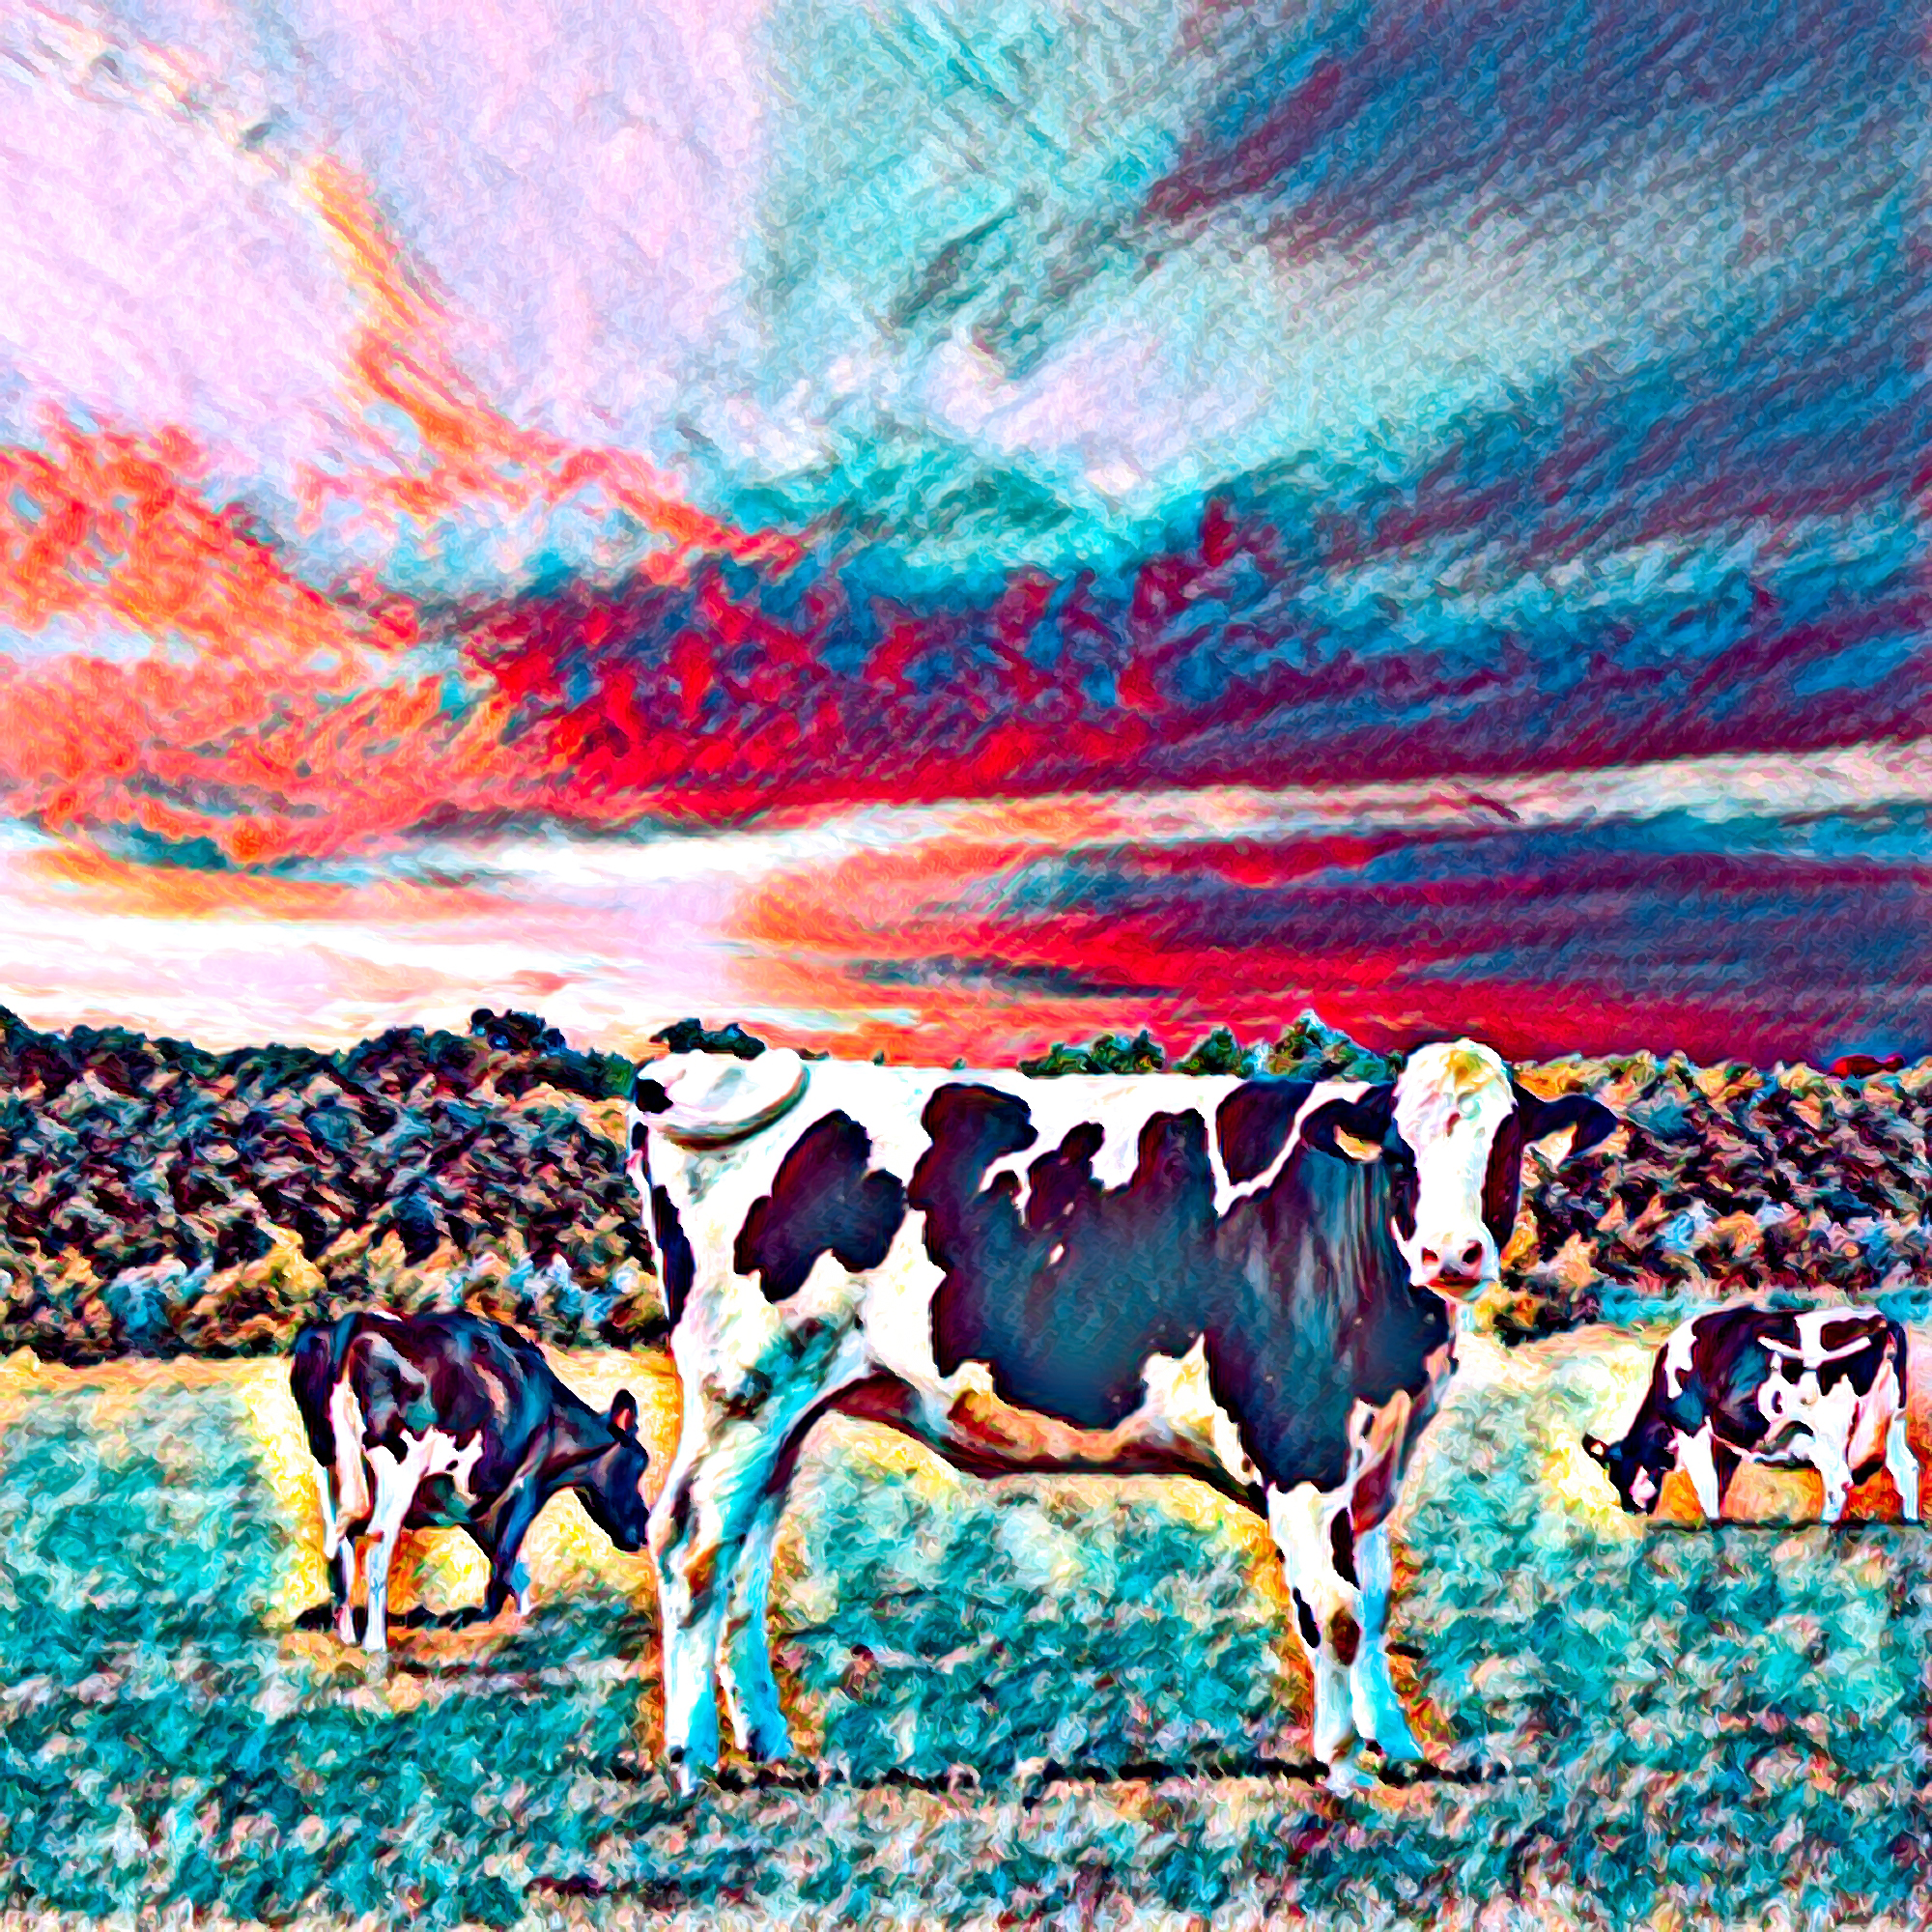 無料壁紙 背景画像素材 牧場の牛とカラフルできれいな夕日のイラスト Free Illustlation くりえいてぃぶ